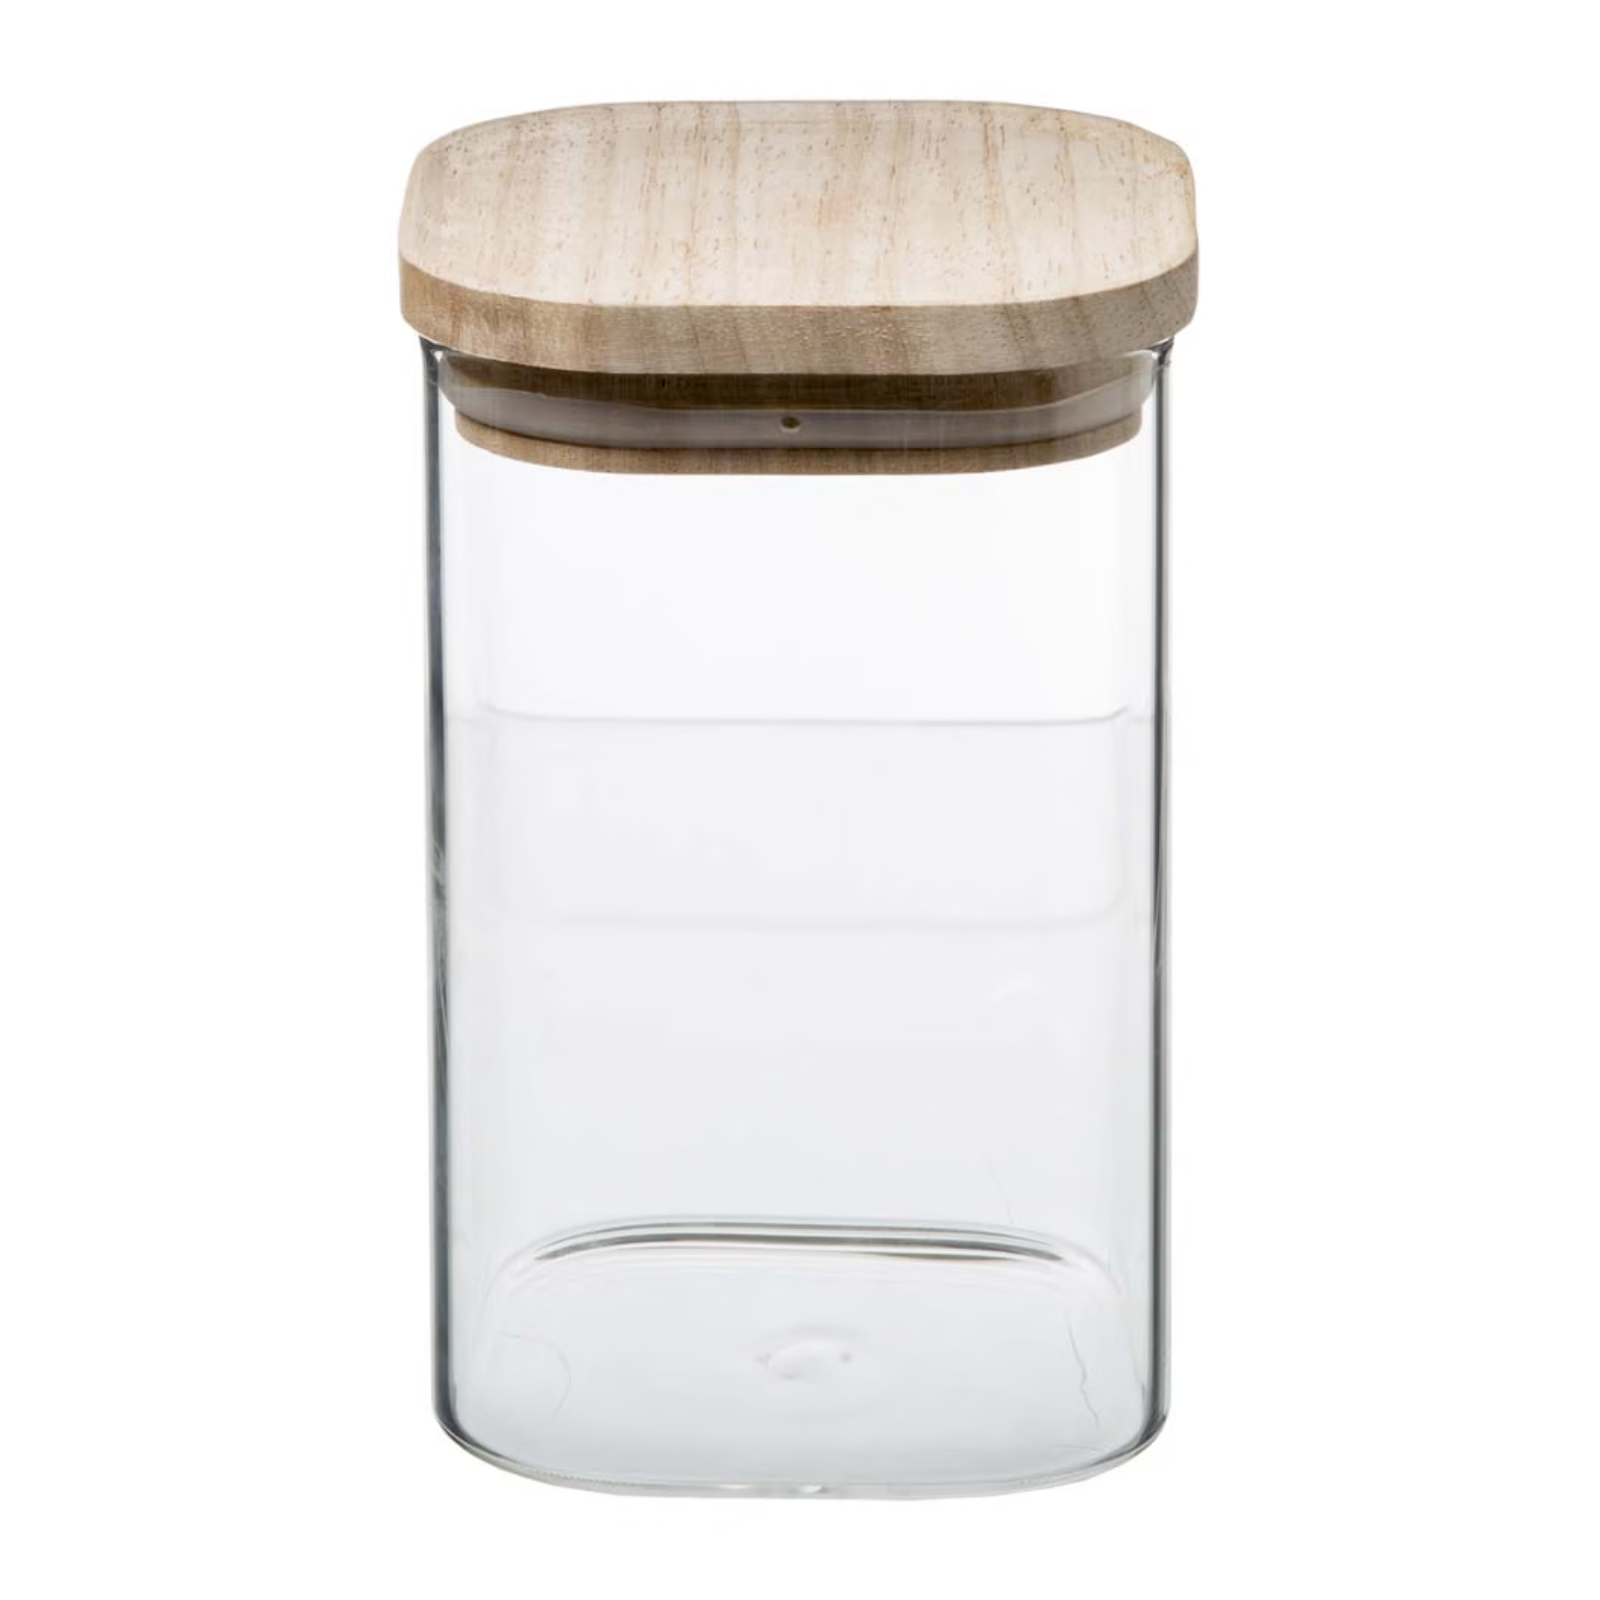 Set 3 barattoli contenitore da cucina in vetro impilabili con coperchio in legno